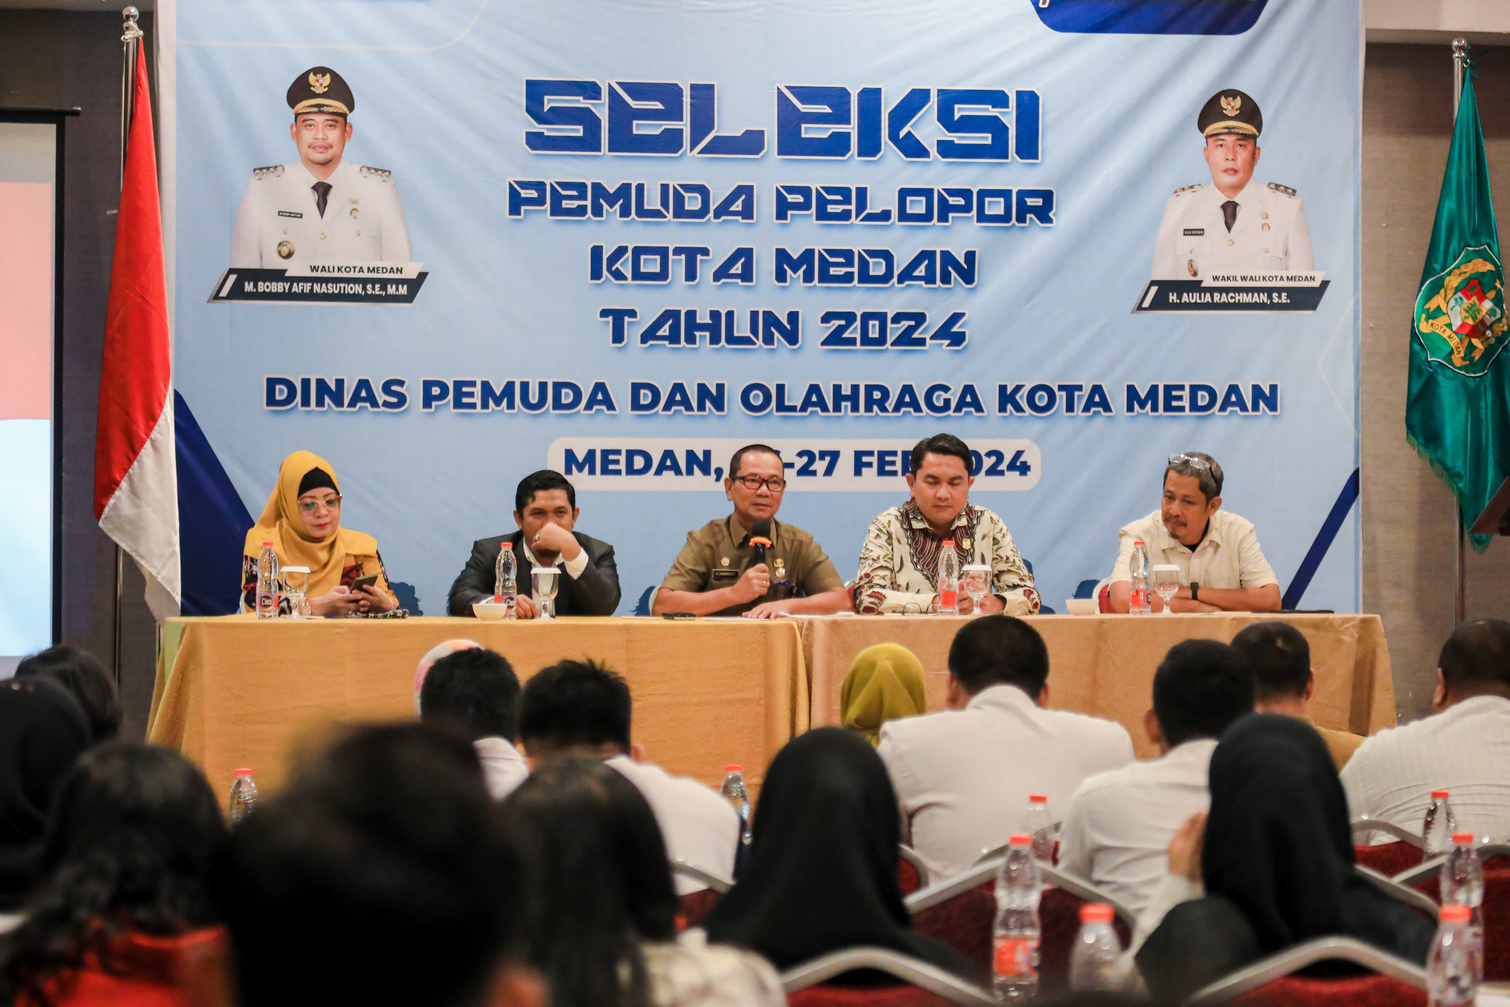 Seleksi Pemuda Pelopor Kota Medan, Pembinaan Generasi Muda Menyongsong Indonesia Emas 2045